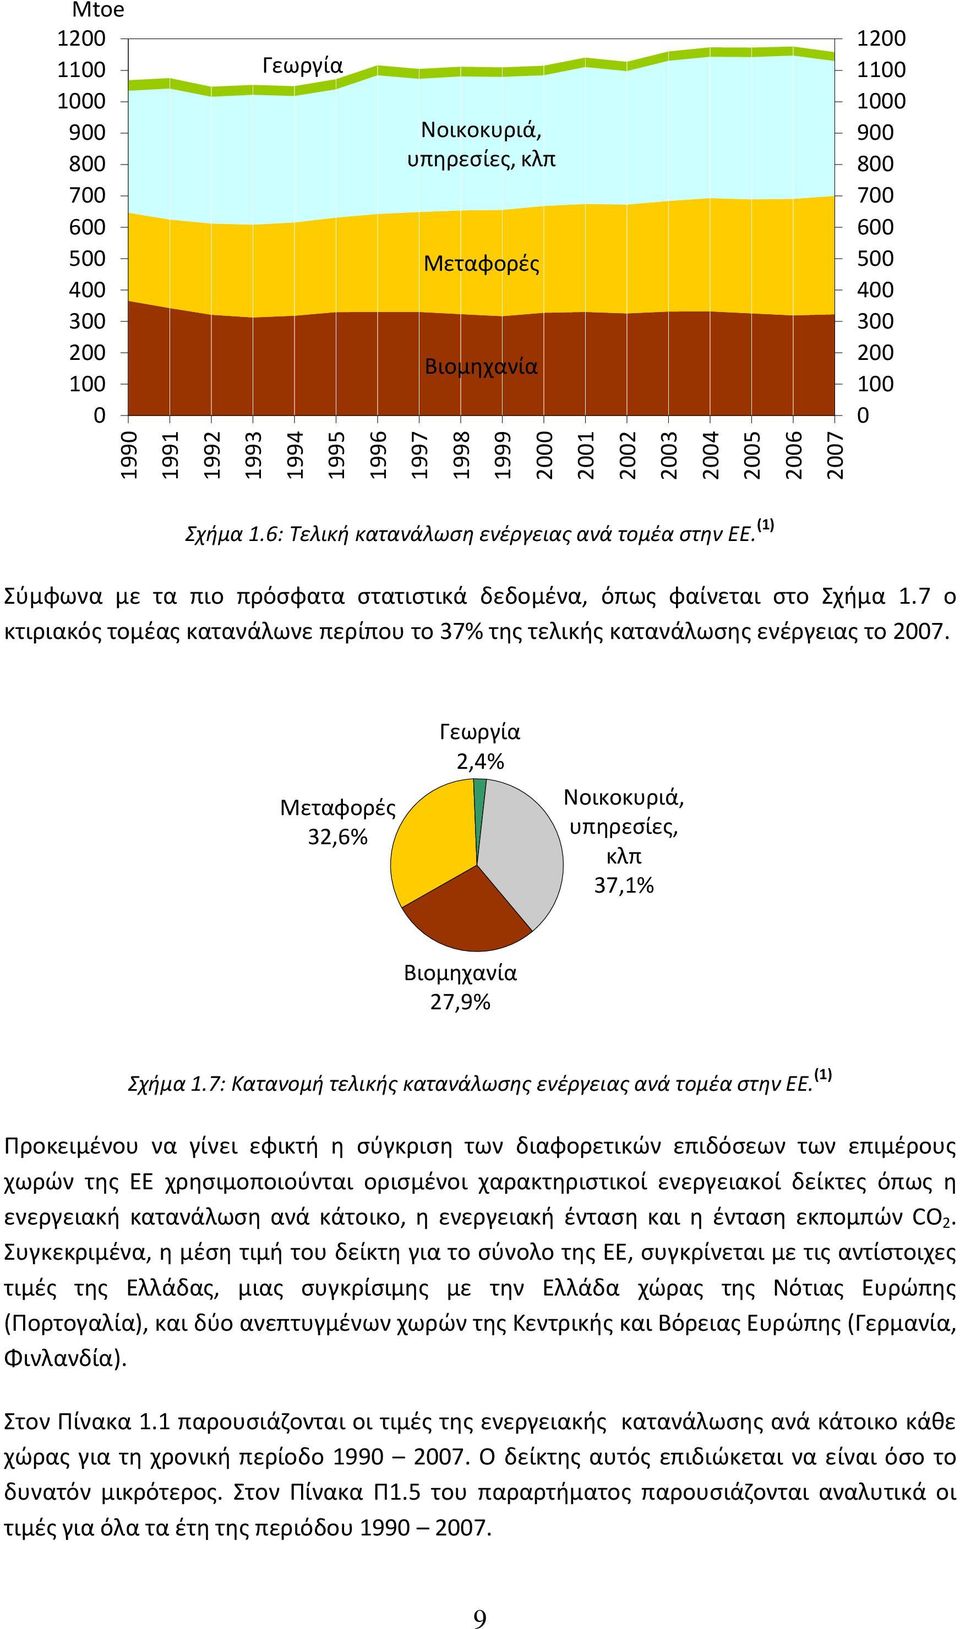 7 ο κτιριακόσ τομζασ κατανάλωνε περίπου το 37% τθσ τελικισ κατανάλωςθσ ενζργειασ το 2007. Μεταφορζσ 32,6% Γεωργία 2,4% Νοικοκυριά, υπθρεςίεσ, κλπ 37,1% Βιομθχανία 27,9% χιμα 1.